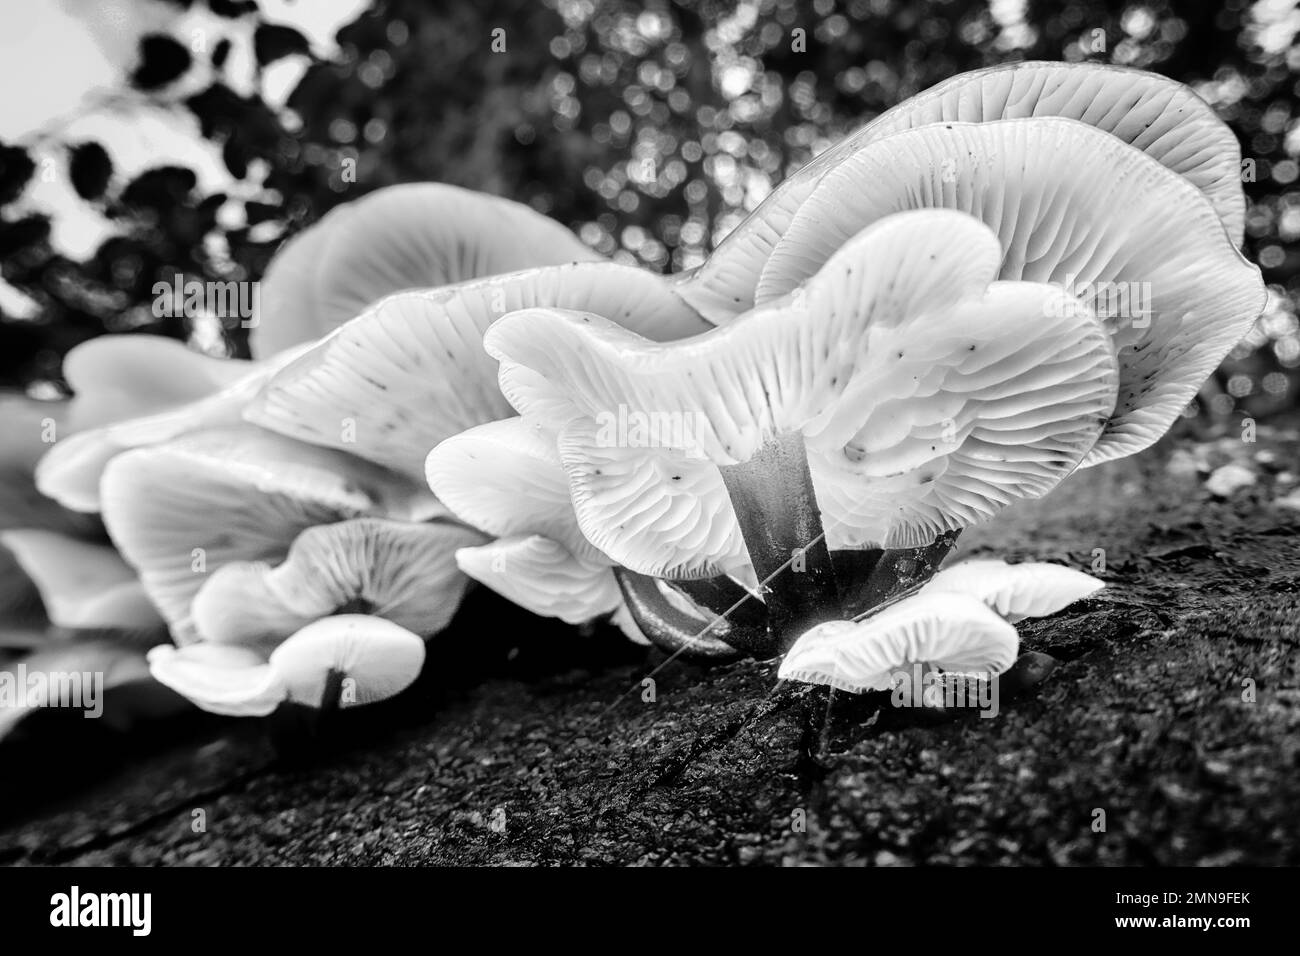 Atemberaubende Gruppe von essbaren Samtstich-Pilz Flammulina velutipes, der auf totem Holz eines Baumstumpfs wächst, mit Blick auf Kiemen in Schwarz-Weiß. UK Stockfoto